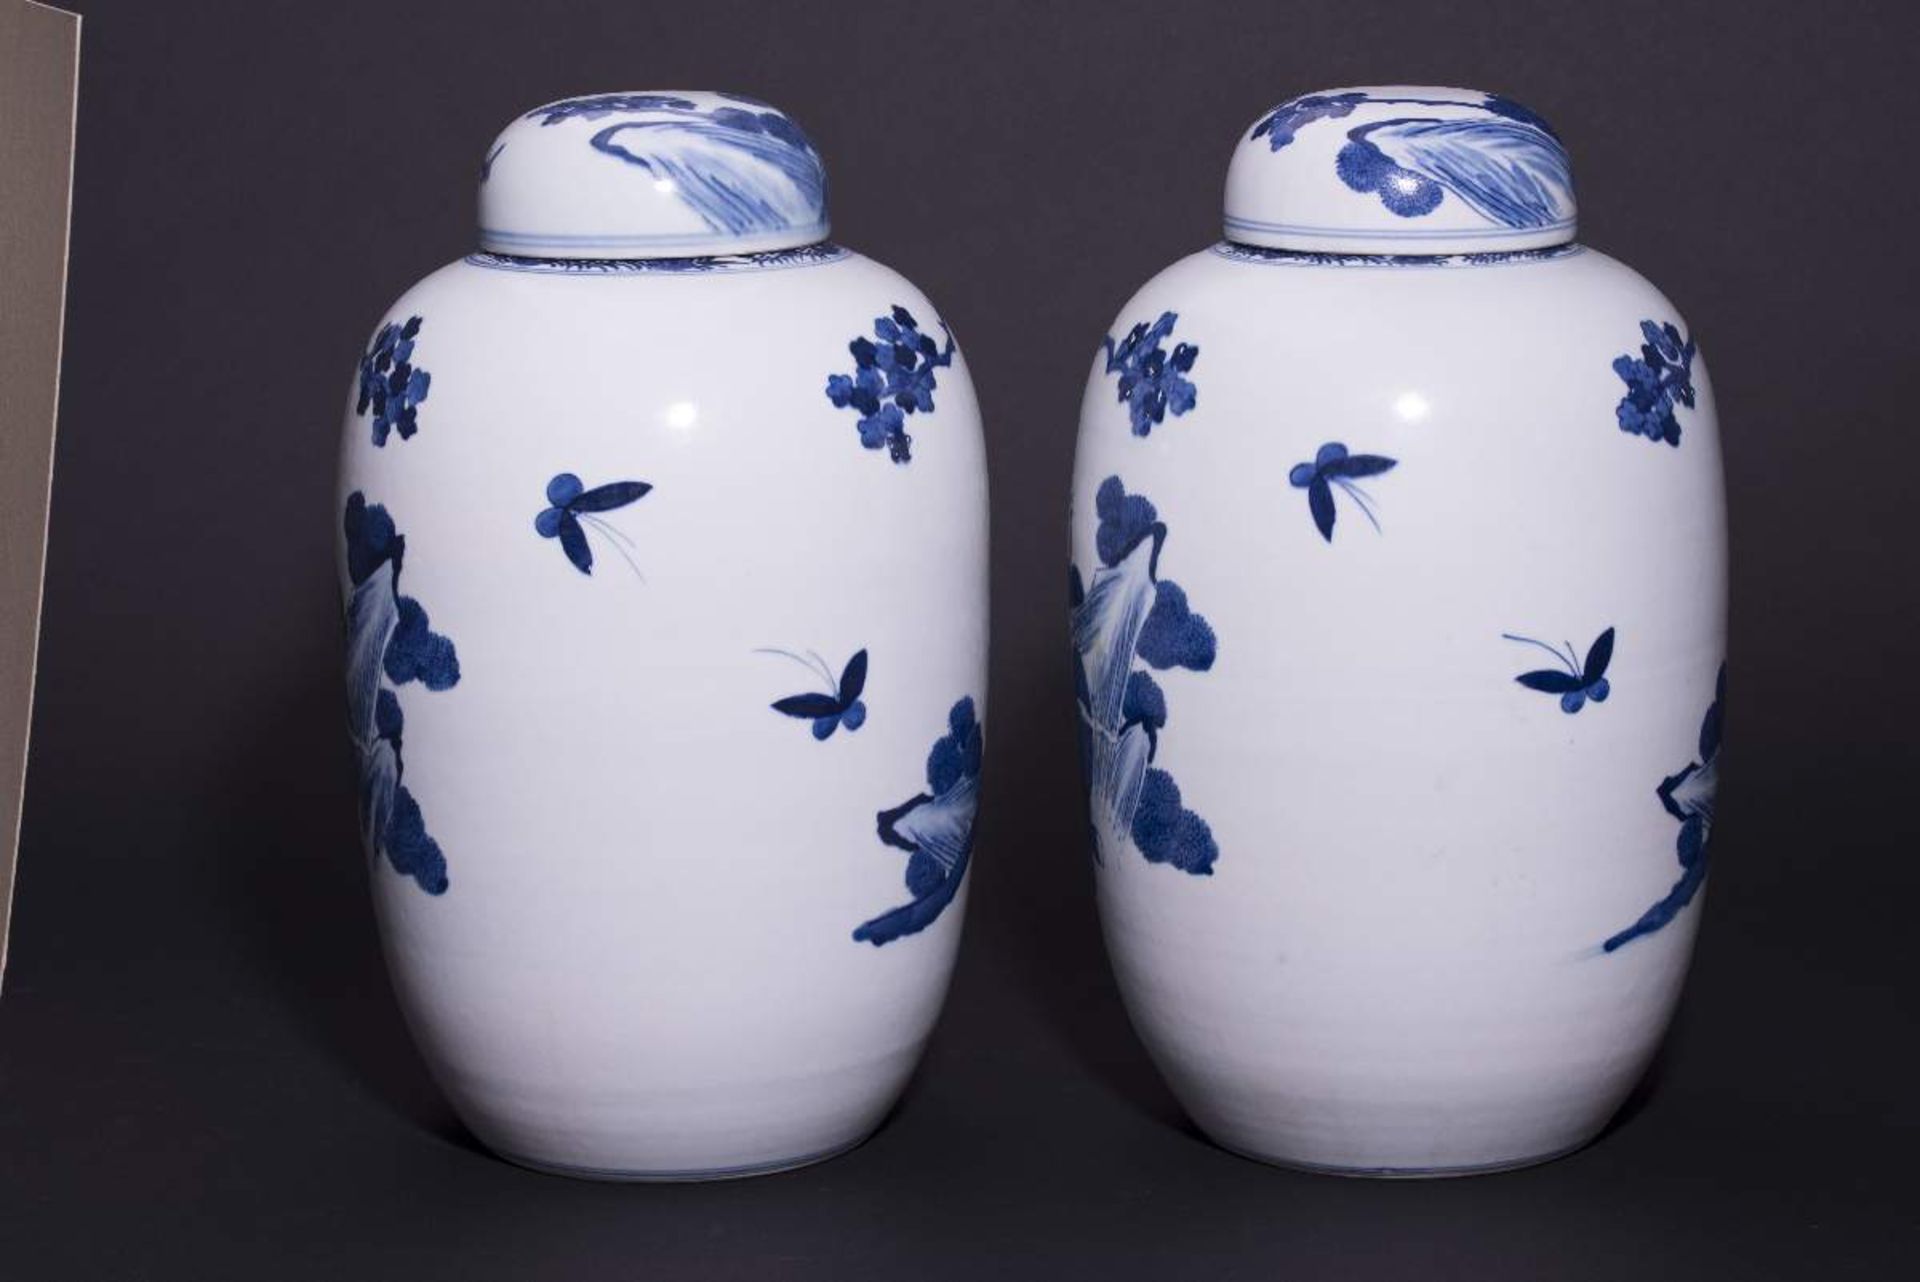 PAAR DECKELVASEN MIT GARTENSZENENBlauweißes Porzellan. China, Qing-Dynastie, 19. Jh.Mit Bodenmarke - Bild 3 aus 6